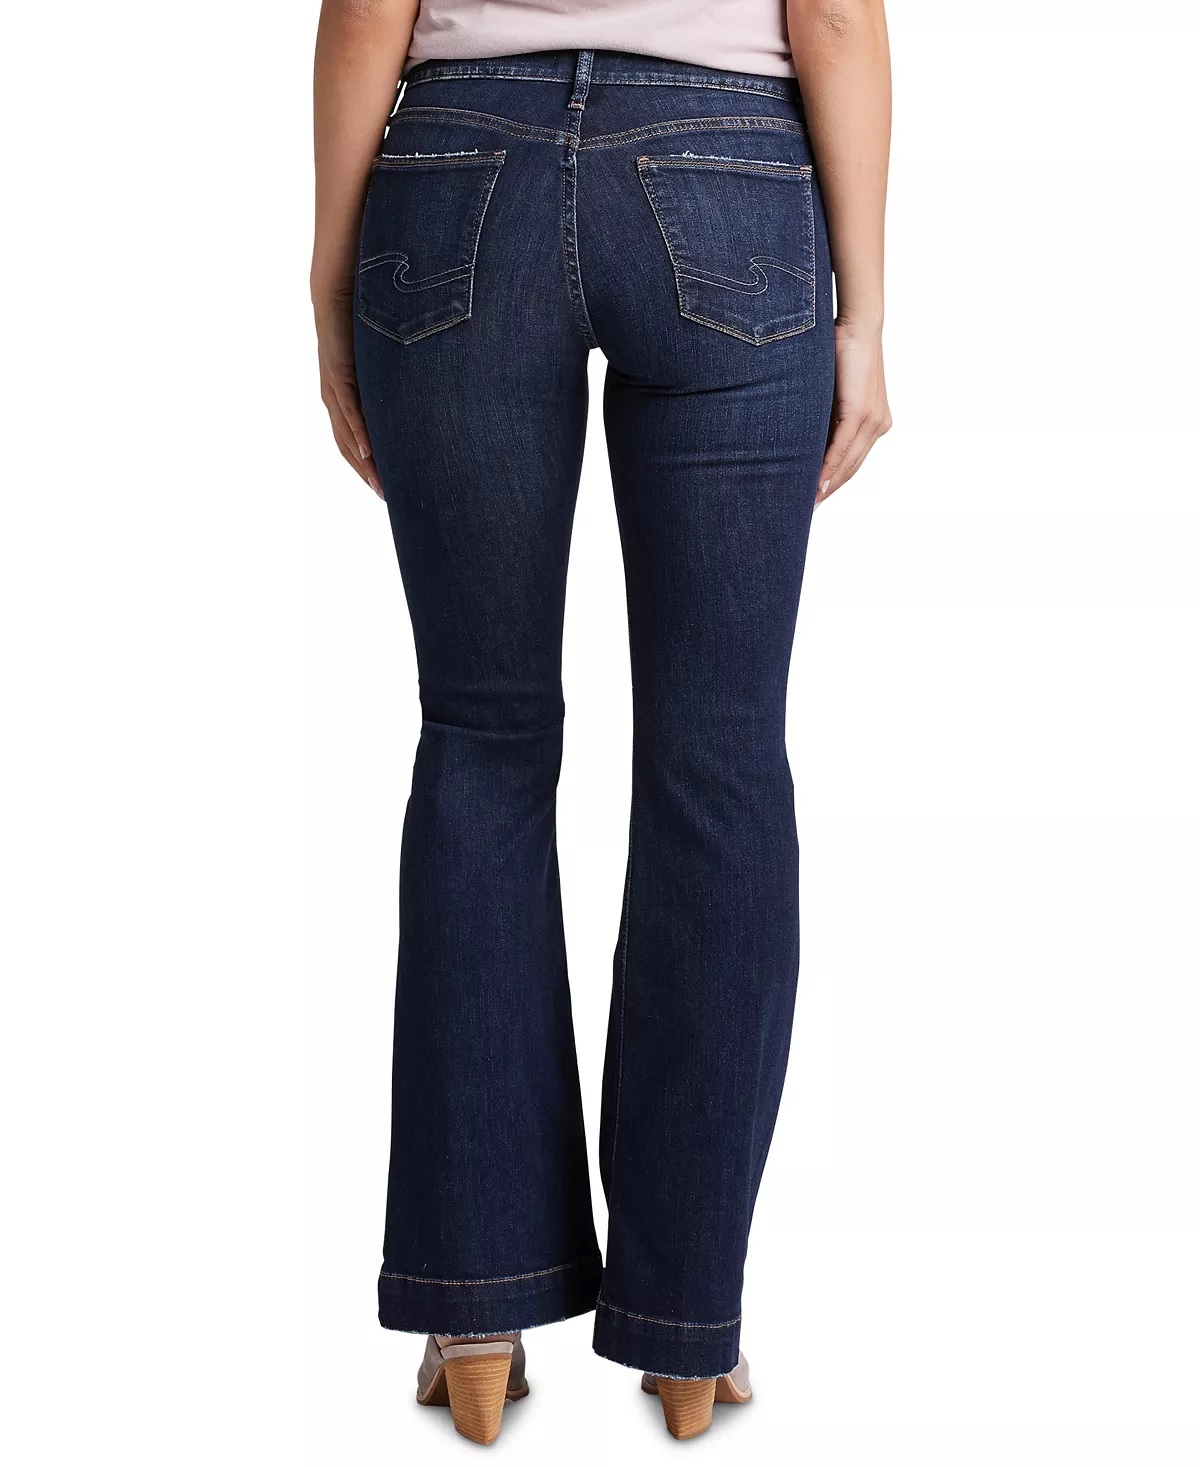 Silver Jeans Co. Silver Jeans Co Women's Avery Curvy Trouser Jean Blue Size 28